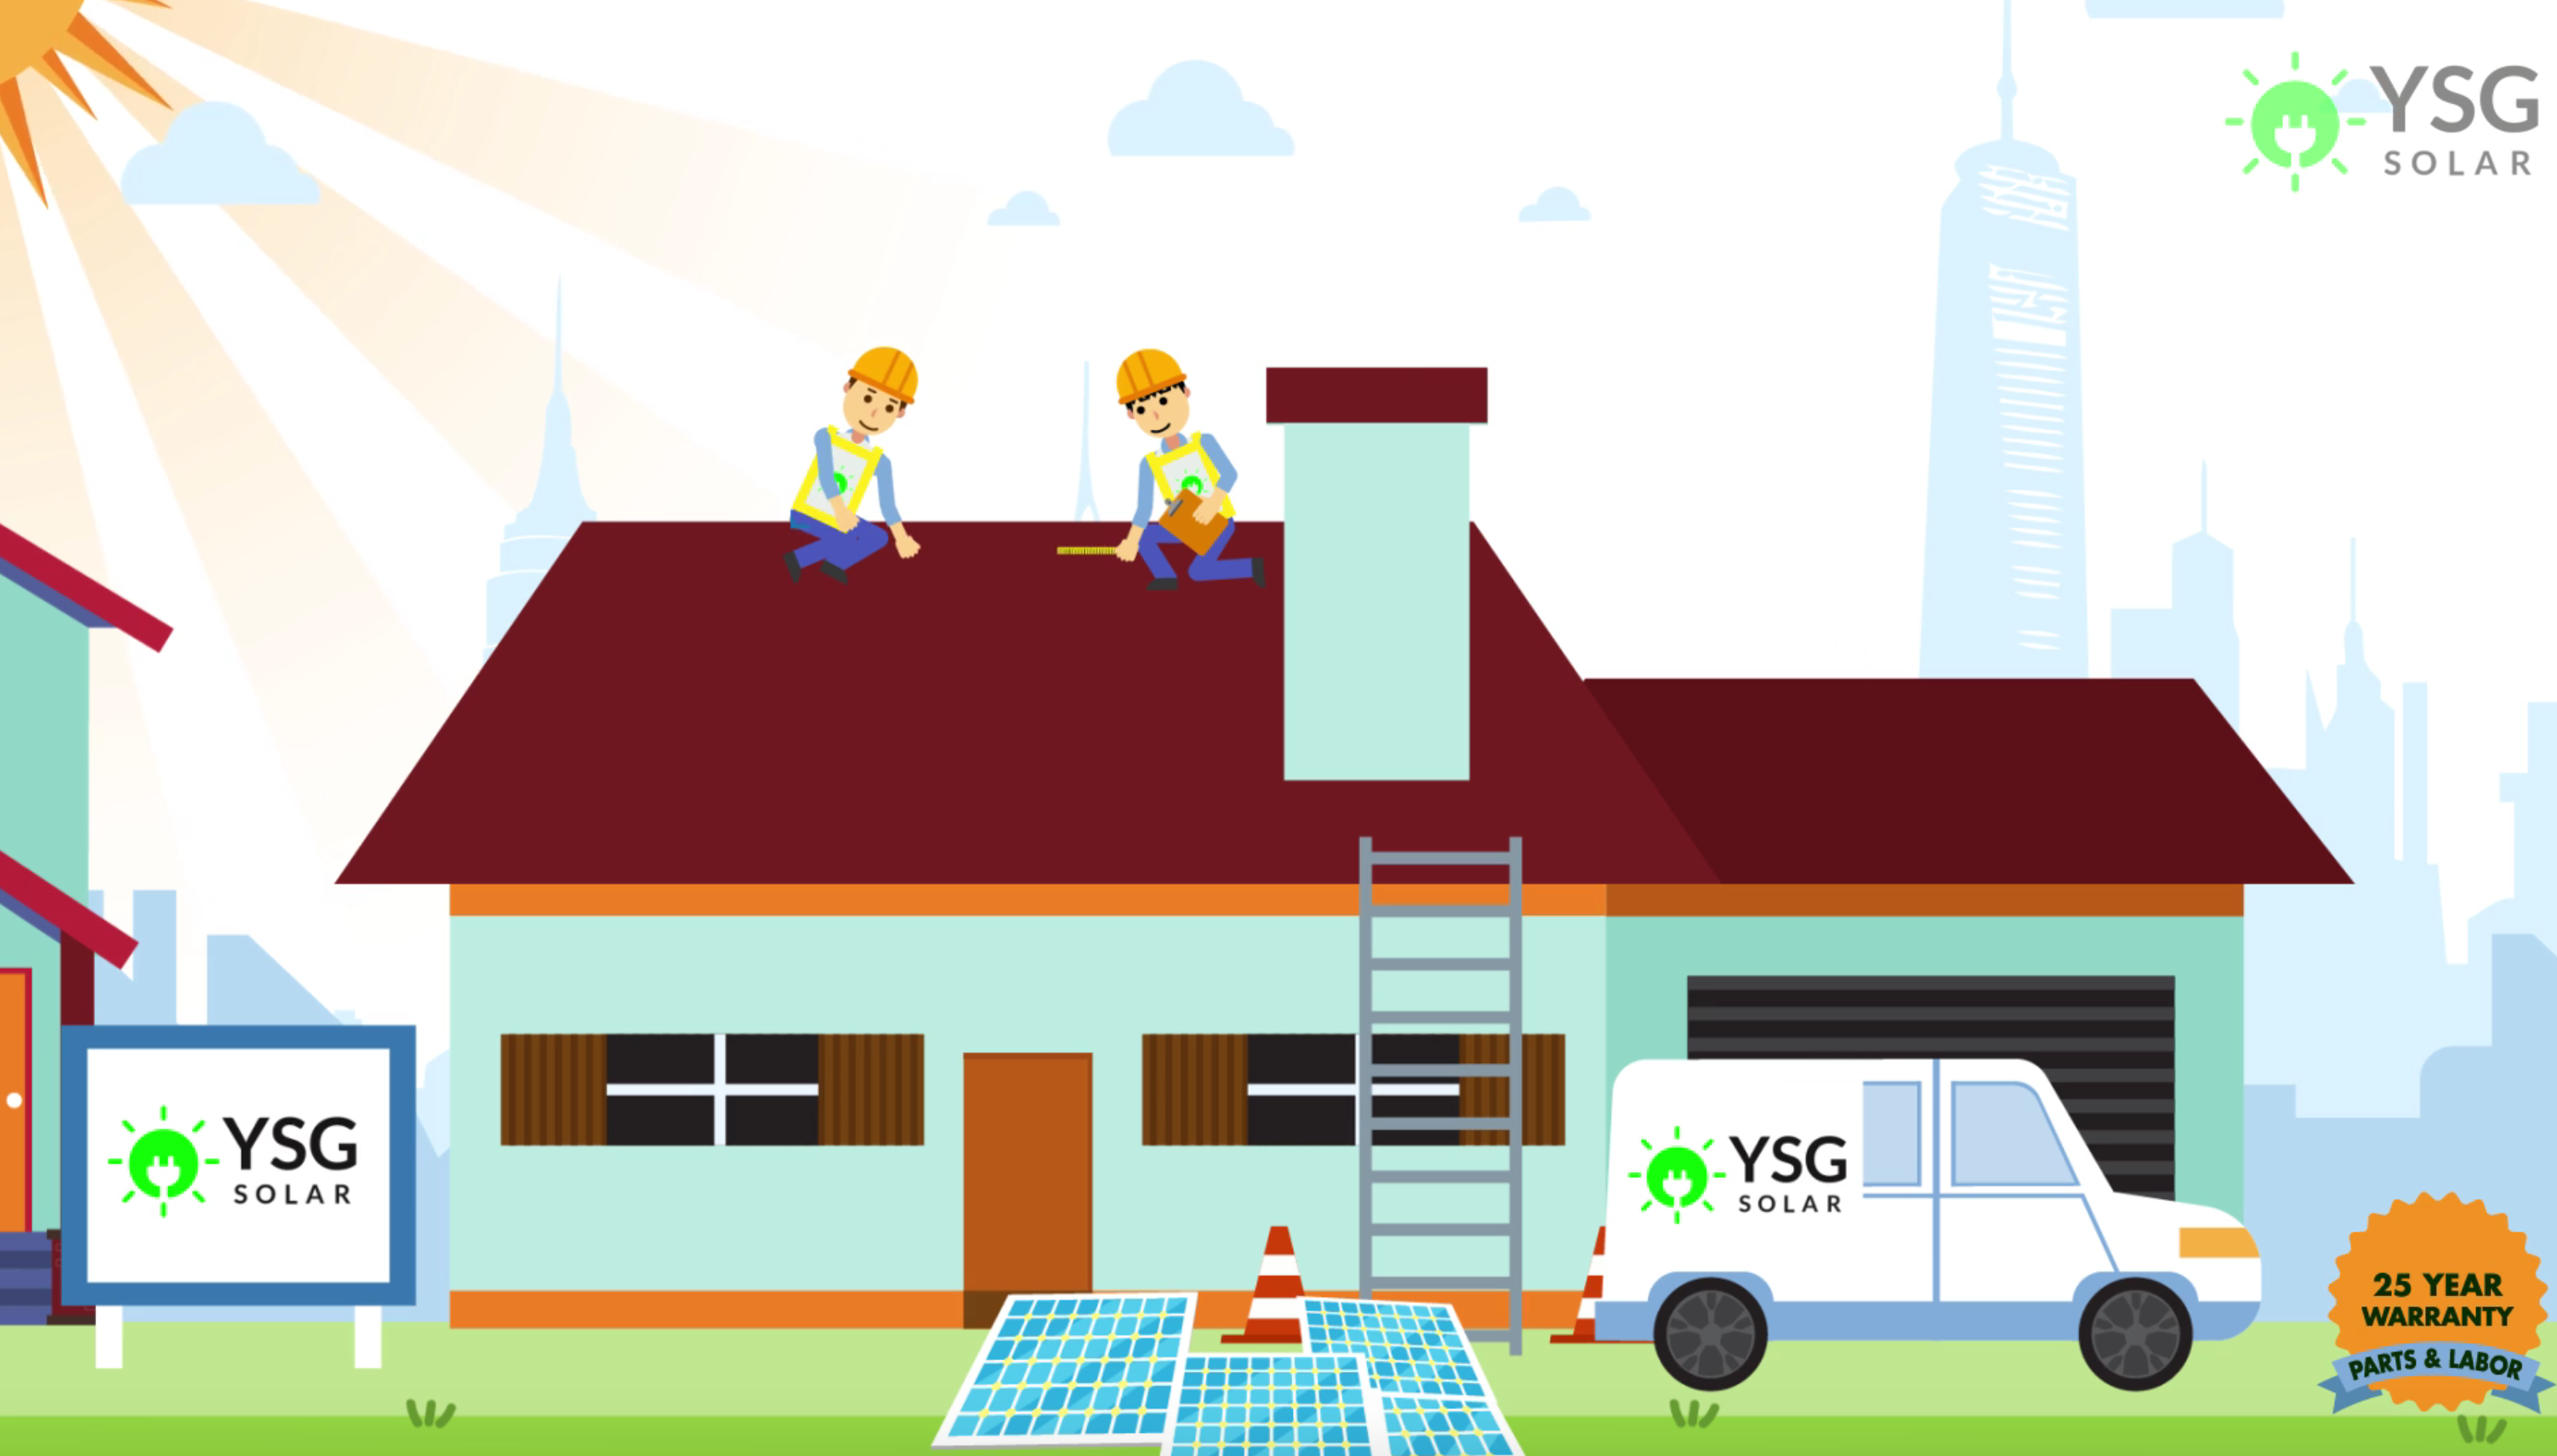 YSG Solar 25 year warranty